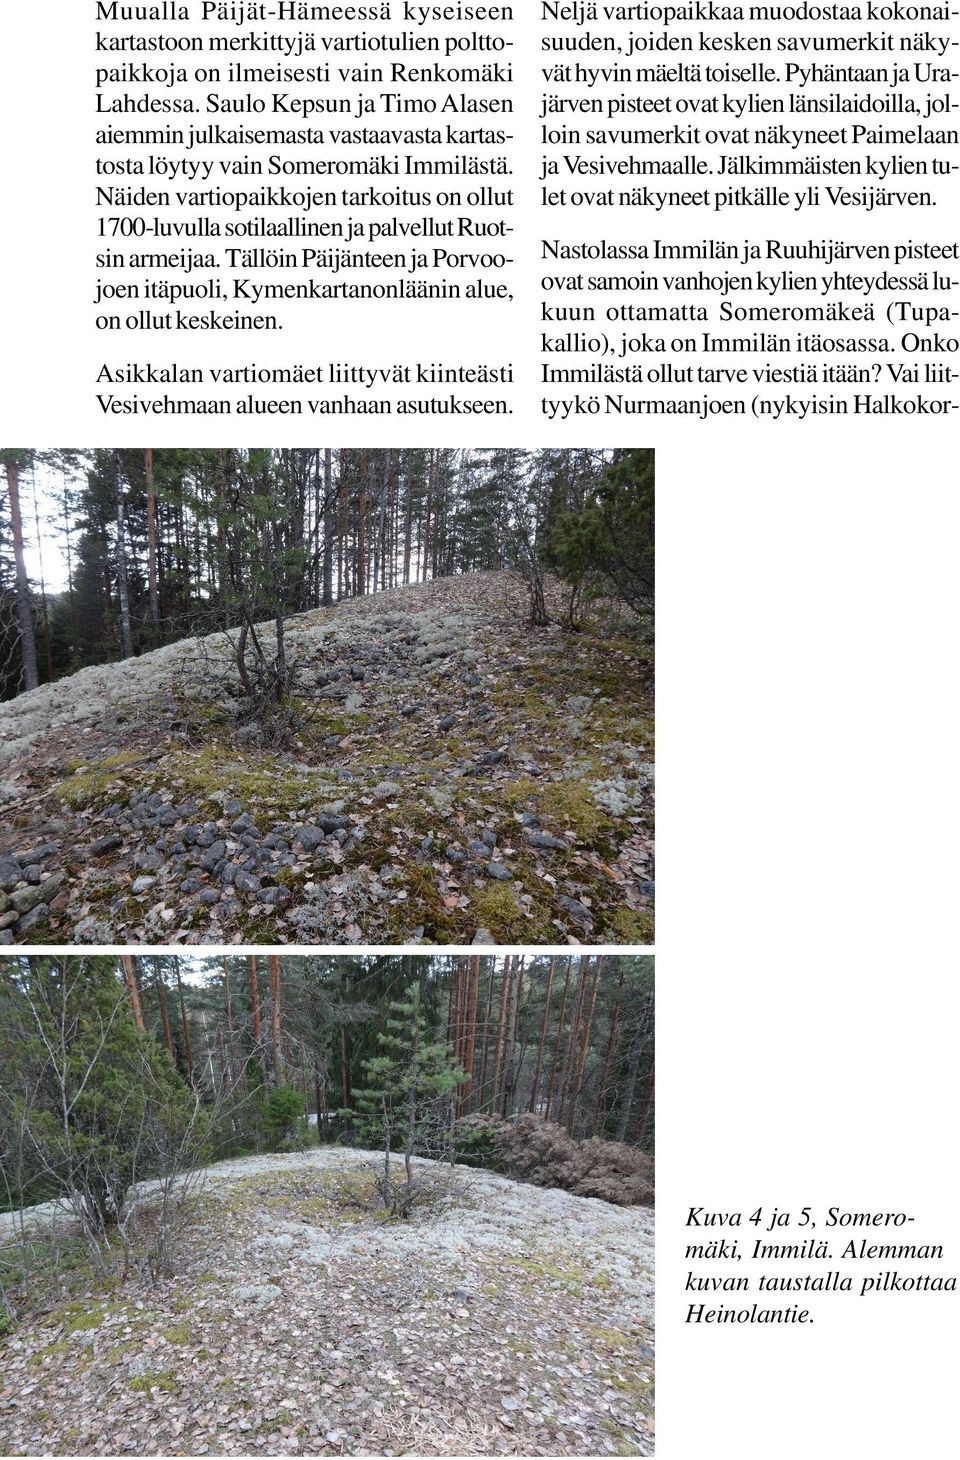 Näiden vartiopaikkojen tarkoitus on ollut 1700-luvulla sotilaallinen ja palvellut Ruotsin armeijaa. Tällöin Päijänteen ja Porvoojoen itäpuoli, Kymenkartanonläänin alue, on ollut keskeinen.